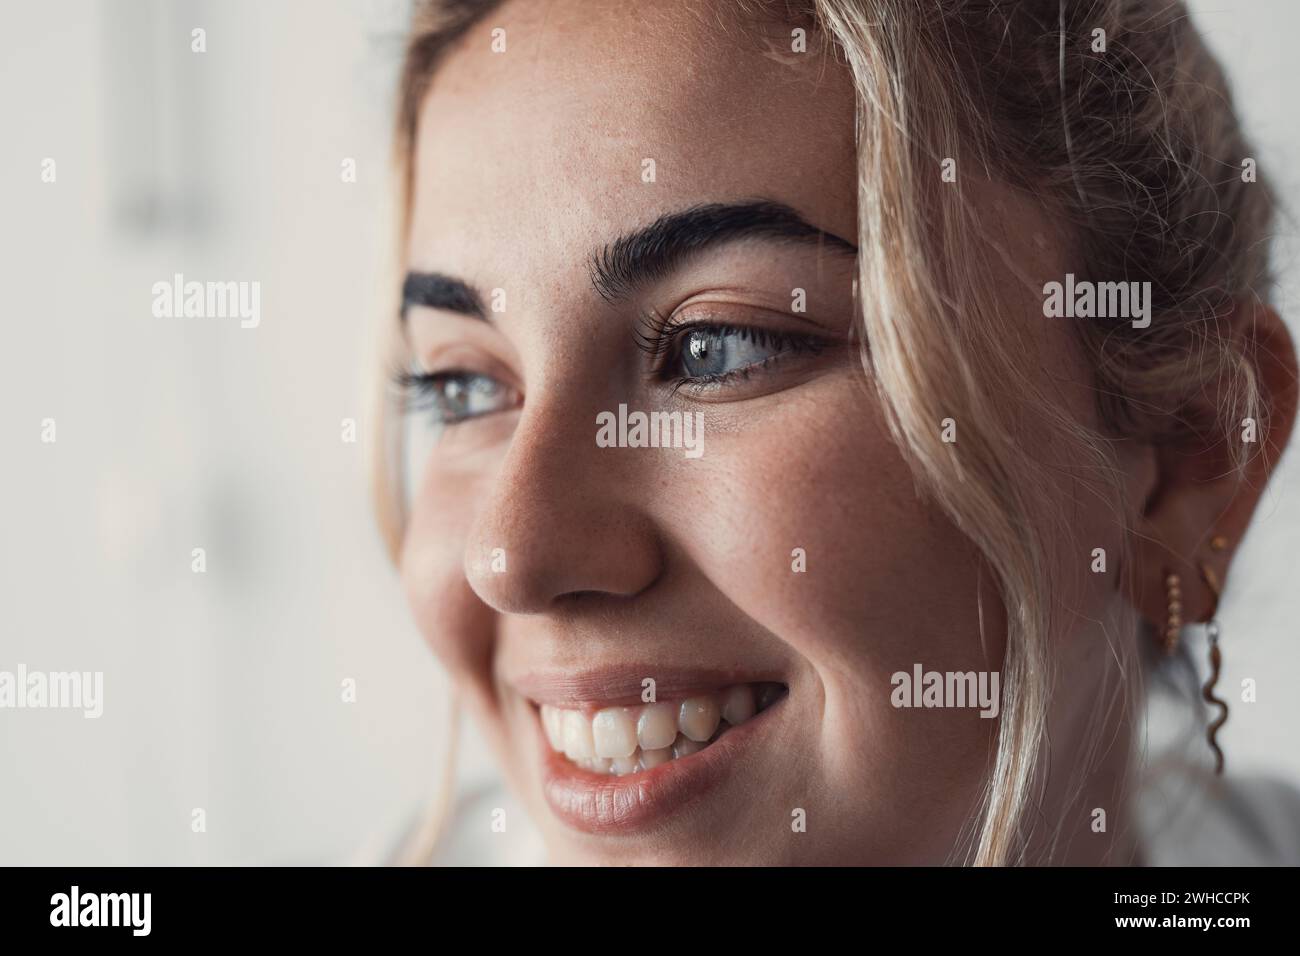 Nahaufnahme des weiblichen Gesichts, glückliche junge kaukasische Frau Porträt, Blick zur Seite, mit weißgezahntem Lächeln, Falten um die Augen, Blick in die Ferne. Natürliche Schönheit, Hautpflegebehandlungen Anzeige Stockfoto